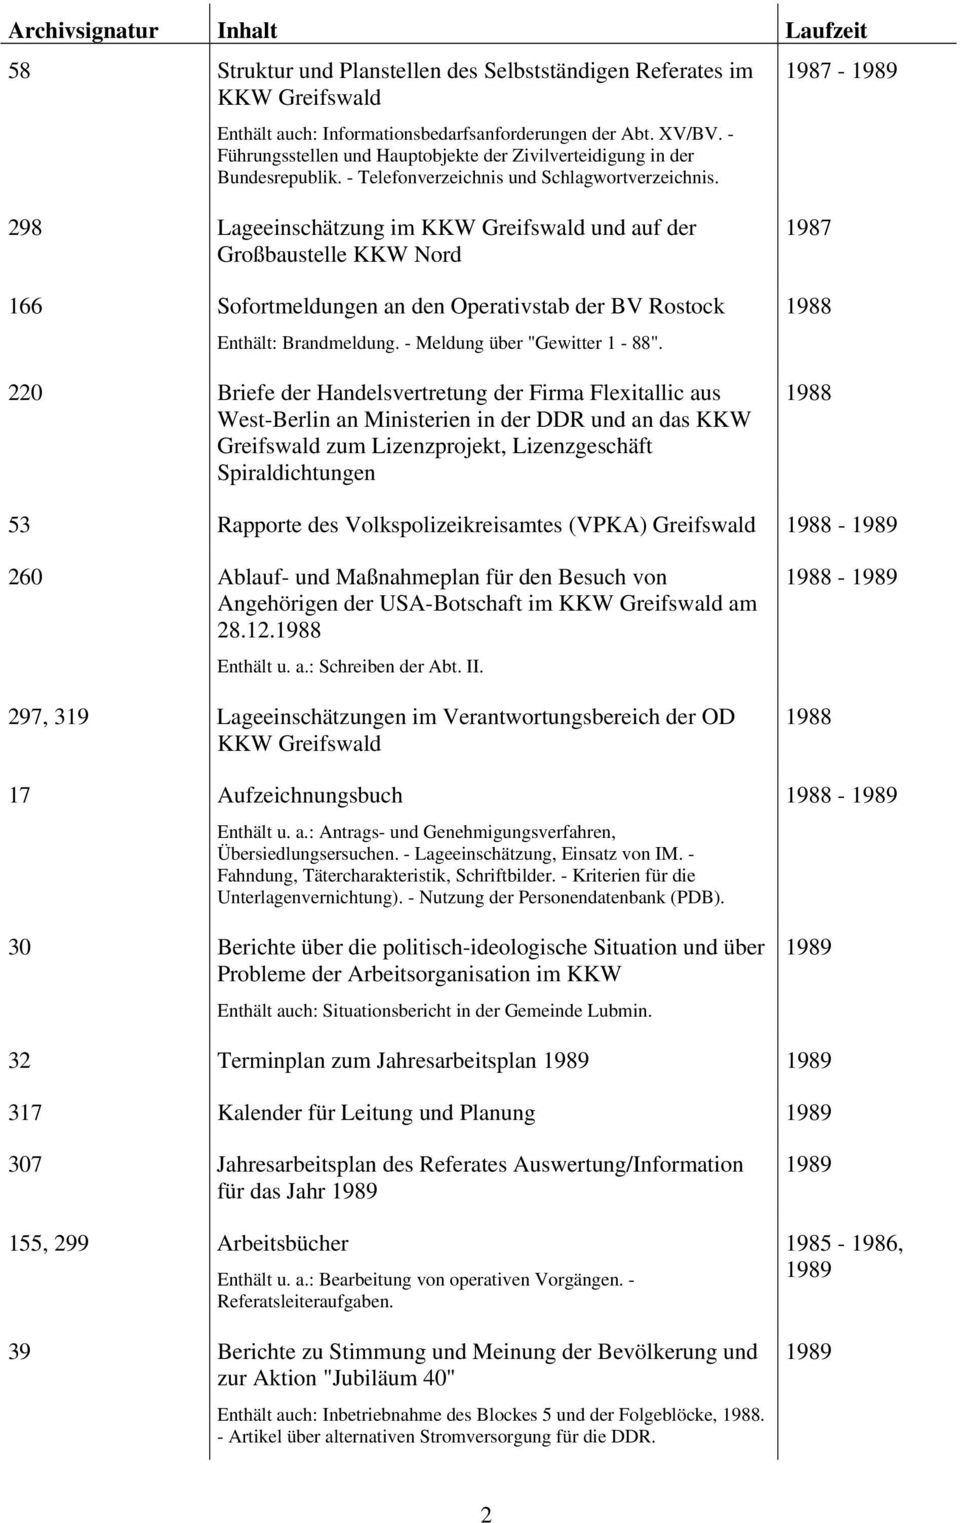 1987-298 Lageeinschätzung im KKW Greifswald und auf der Großbaustelle KKW Nord 166 Sofortmeldungen an den Operativstab der BV Rostock Enthält: Brandmeldung. - Meldung über "Gewitter 1-88".